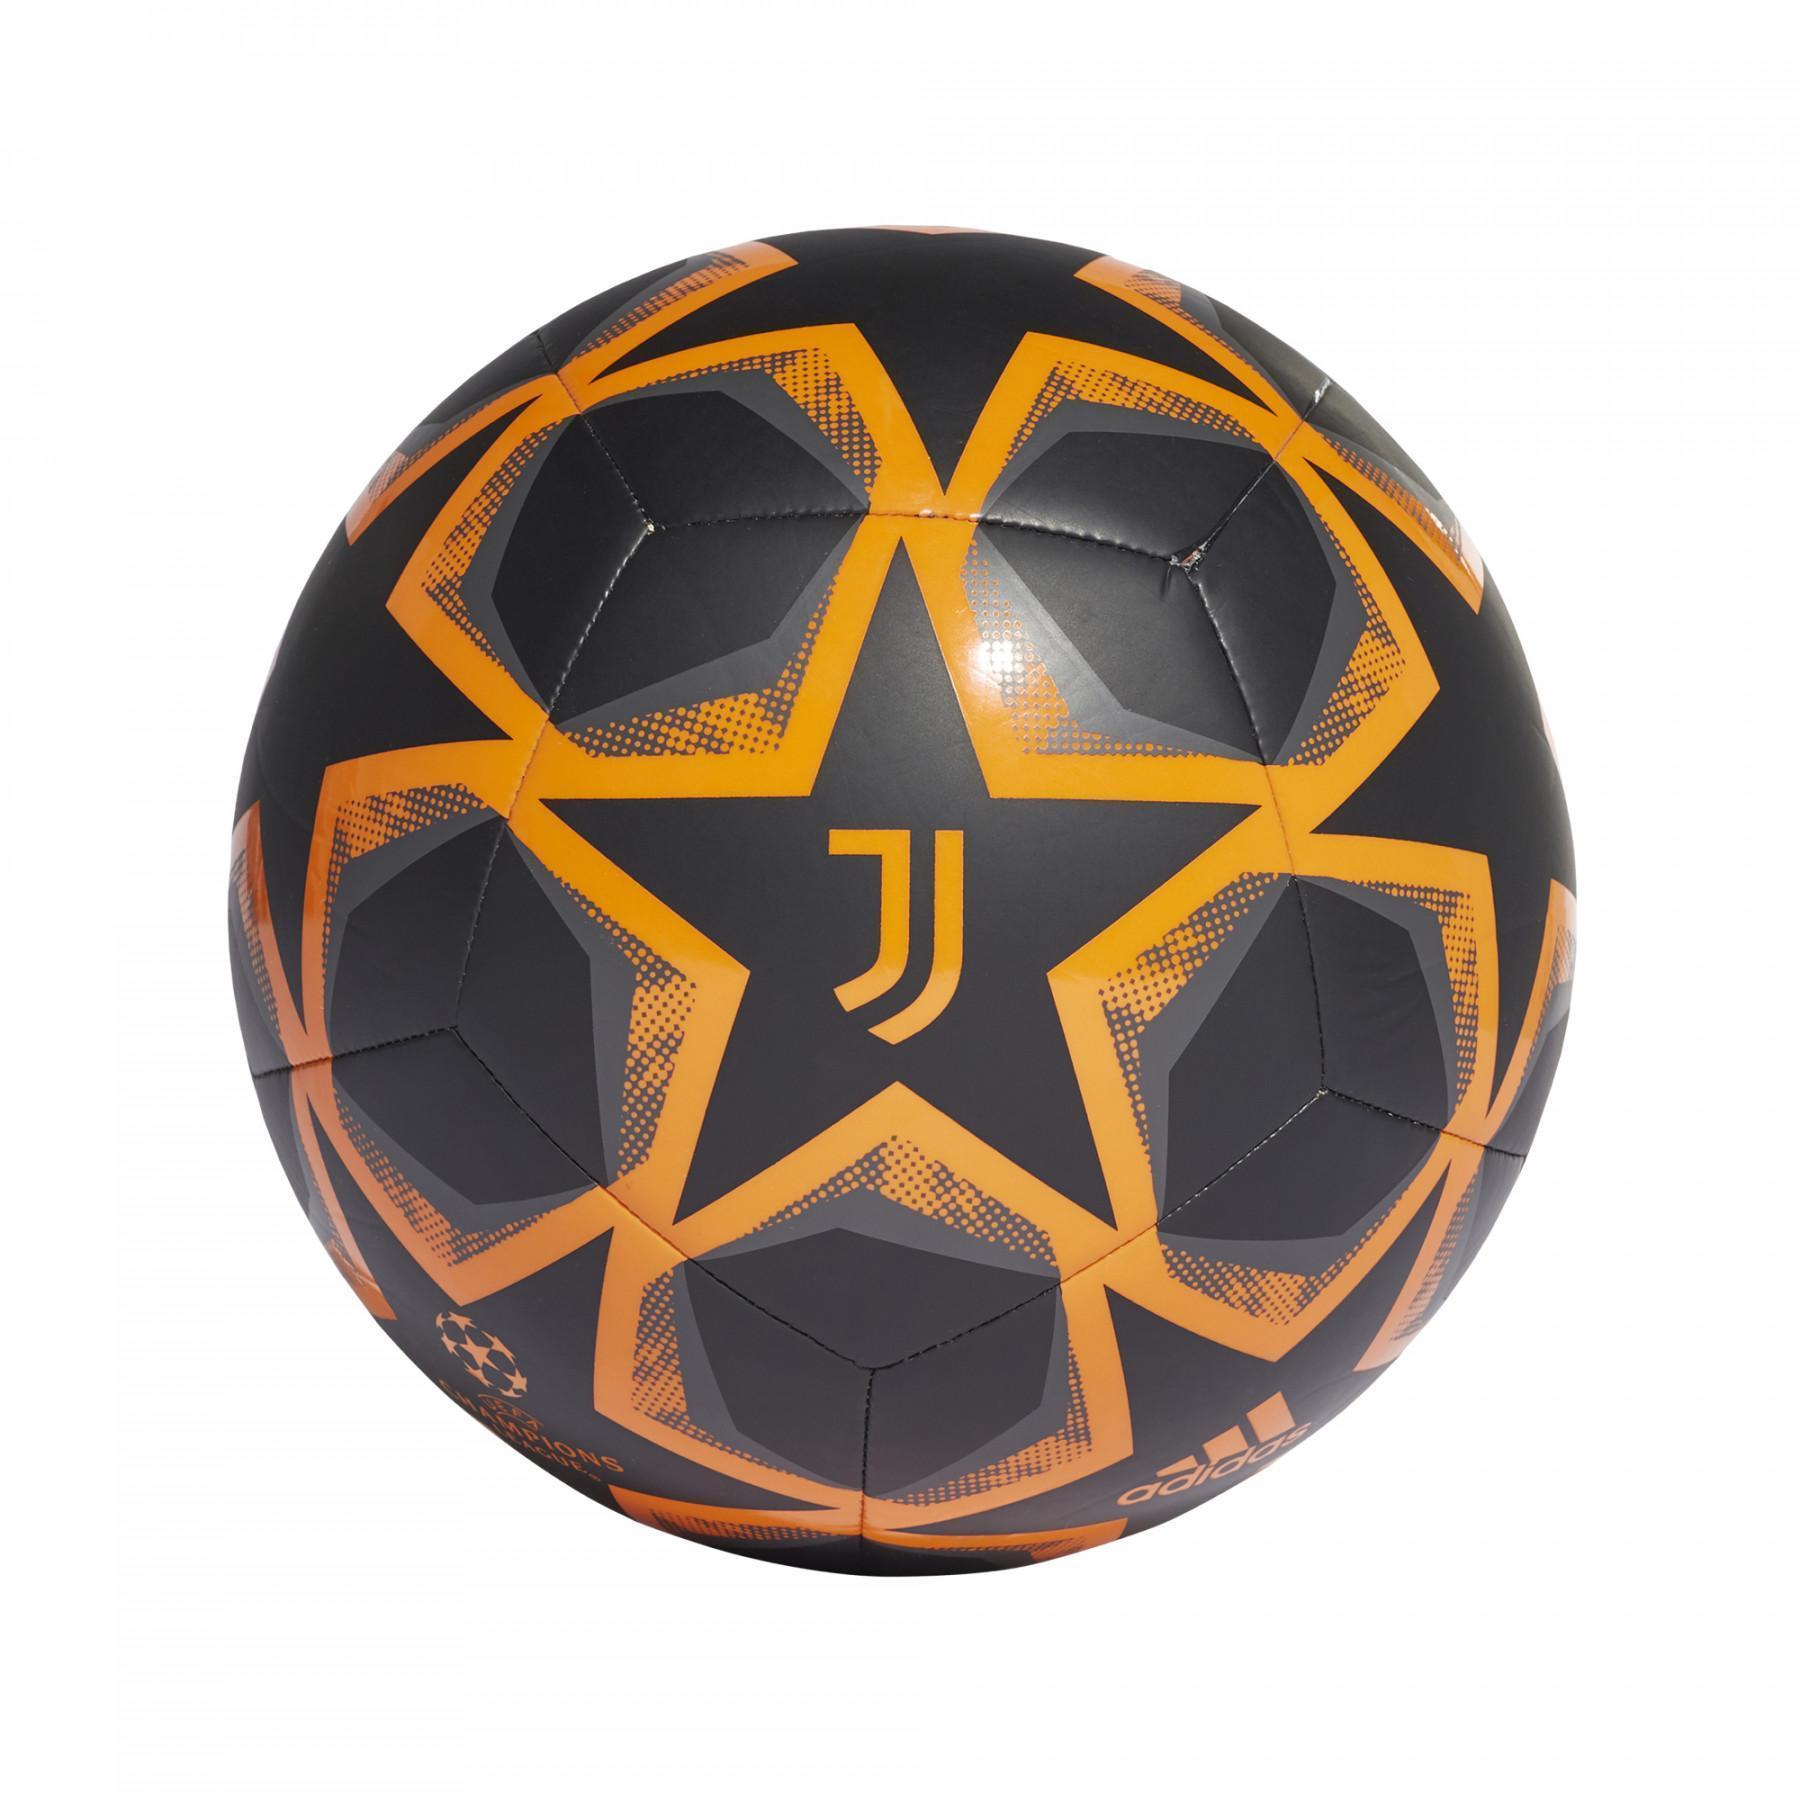 Palla della finale di Champions League Juventus 2020